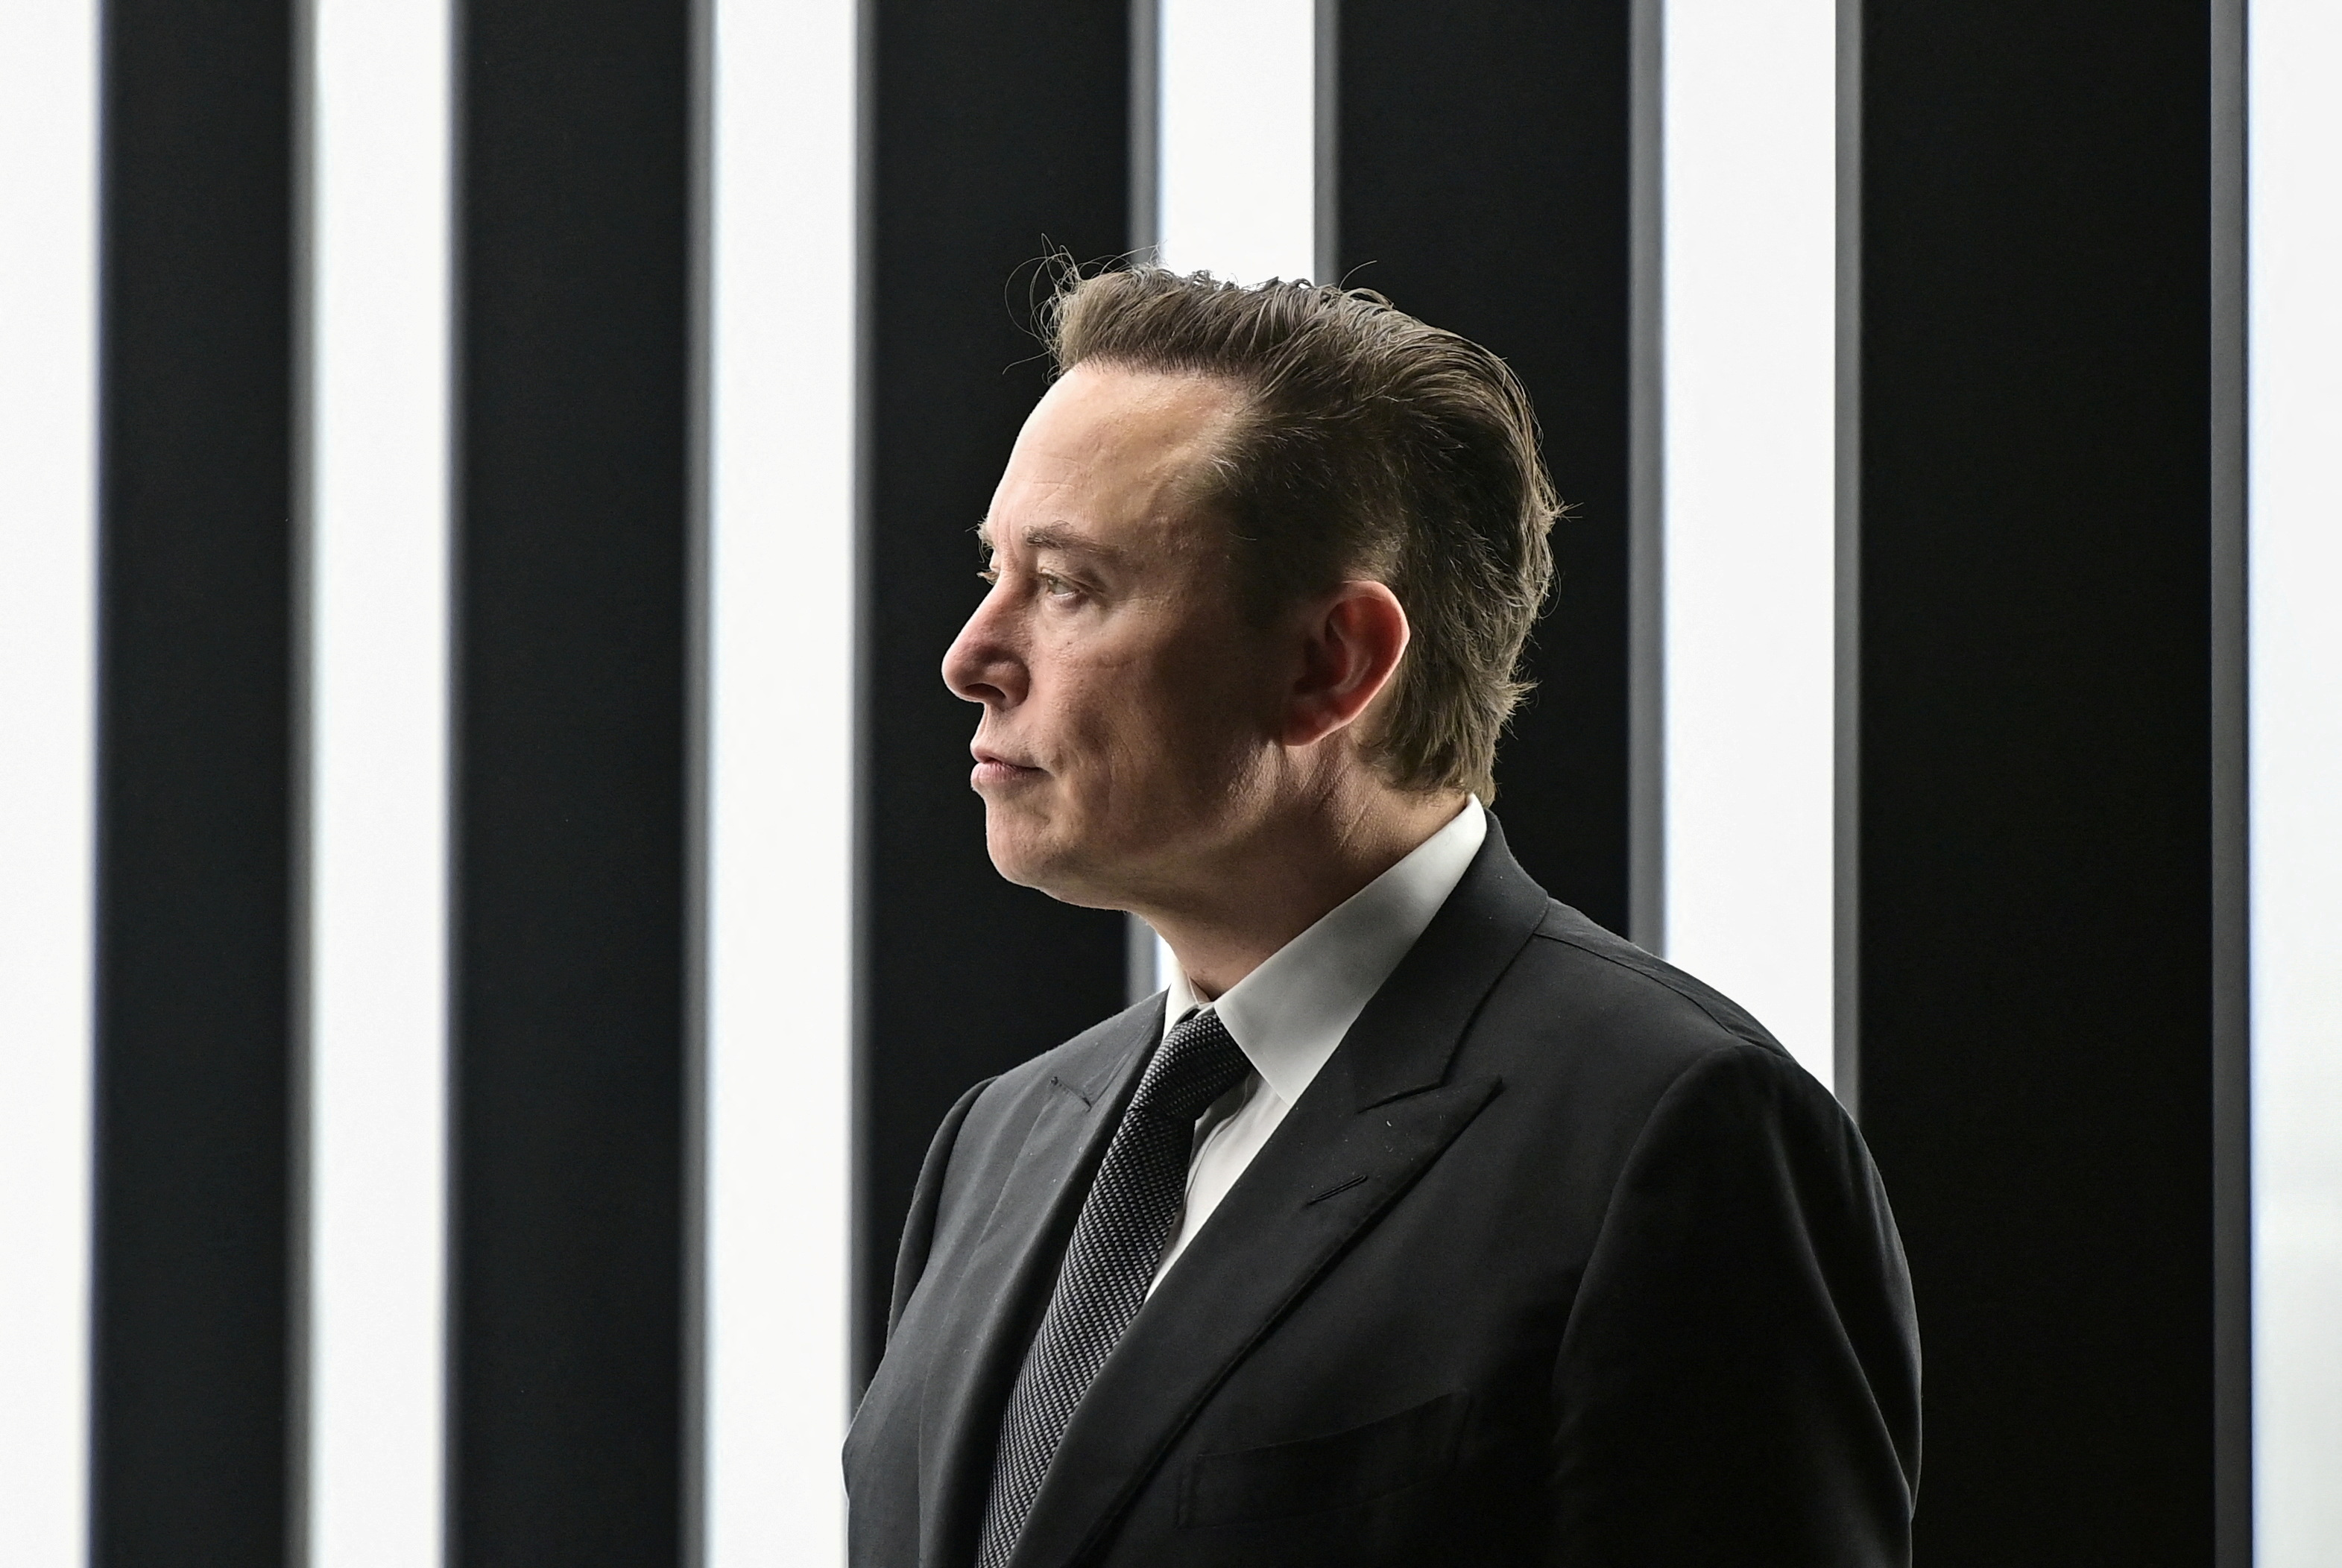 Elon Musk ha estado en medio de la polémica reciente en el mundo del cripto (Foto: Patrick Pleul/Pool via REUTERS/File Photo)